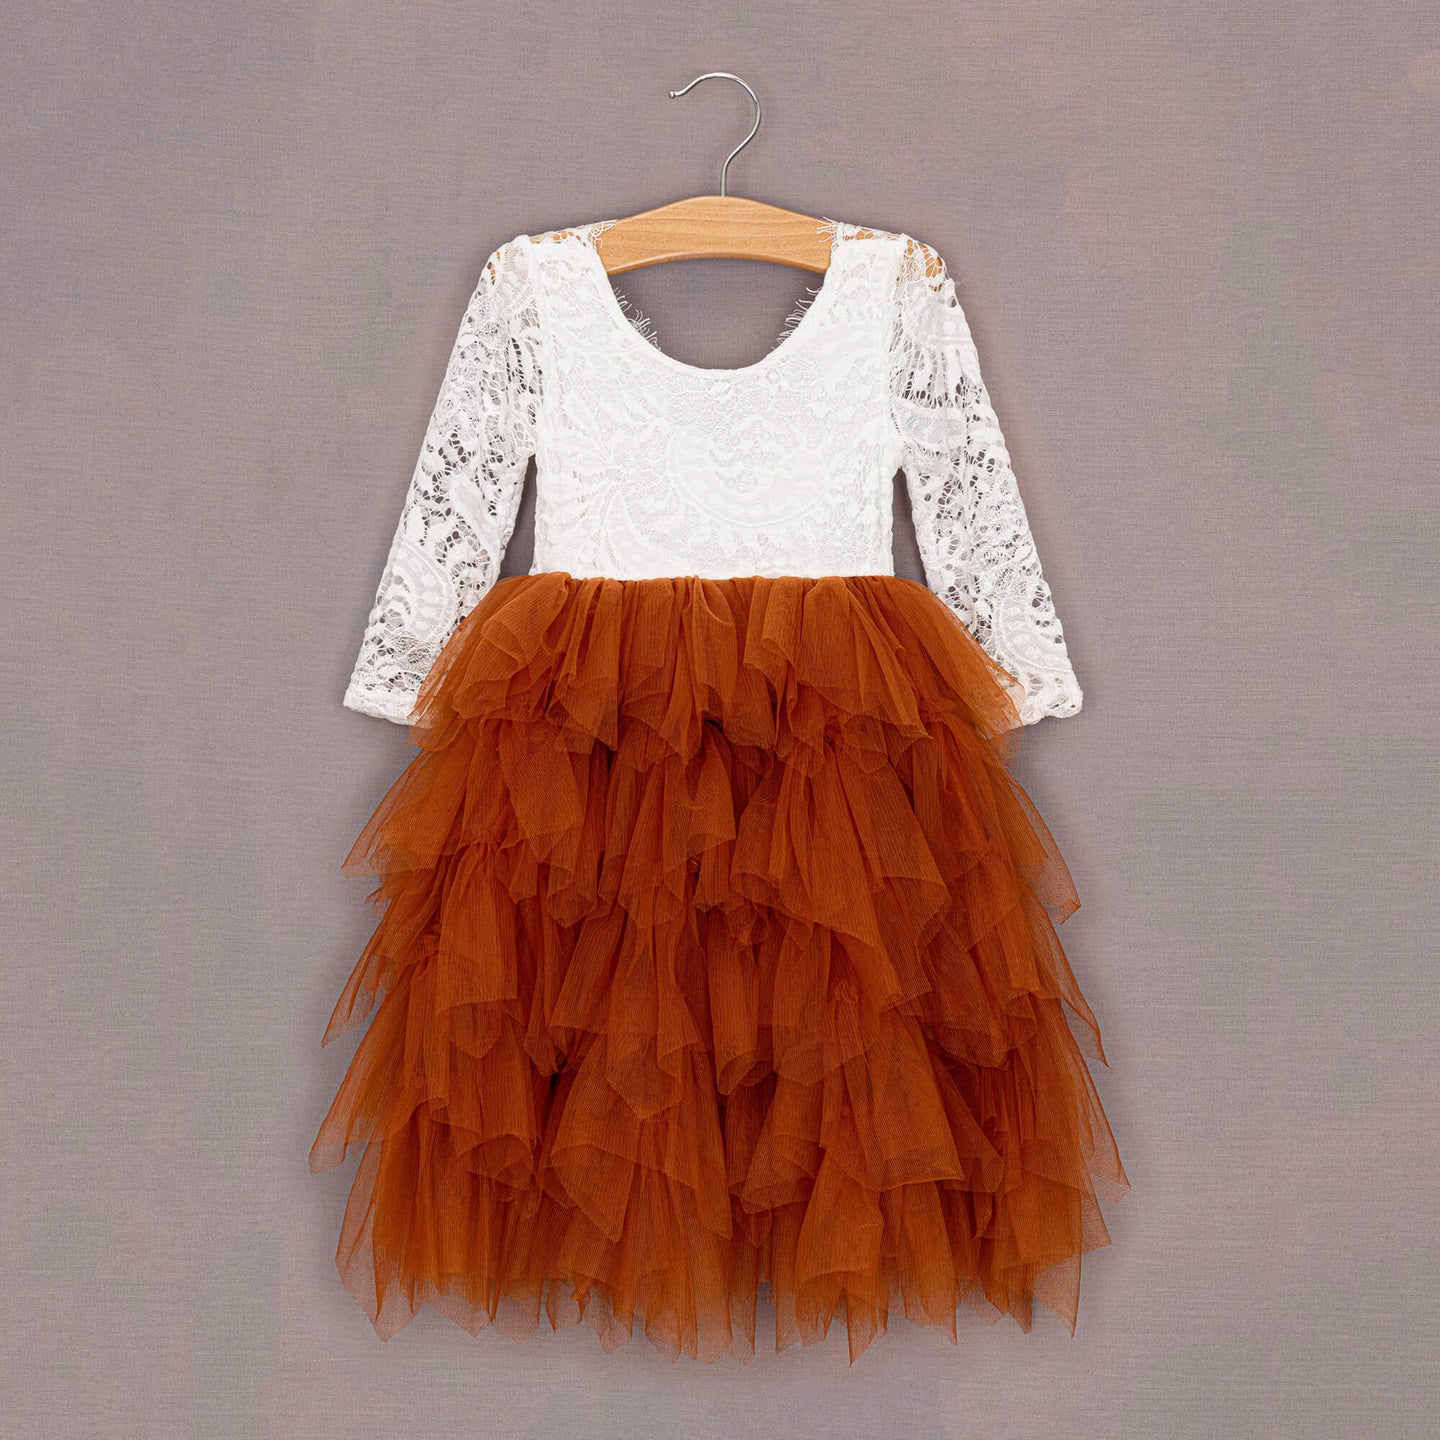 Burnt Orange tulle dress on hanger